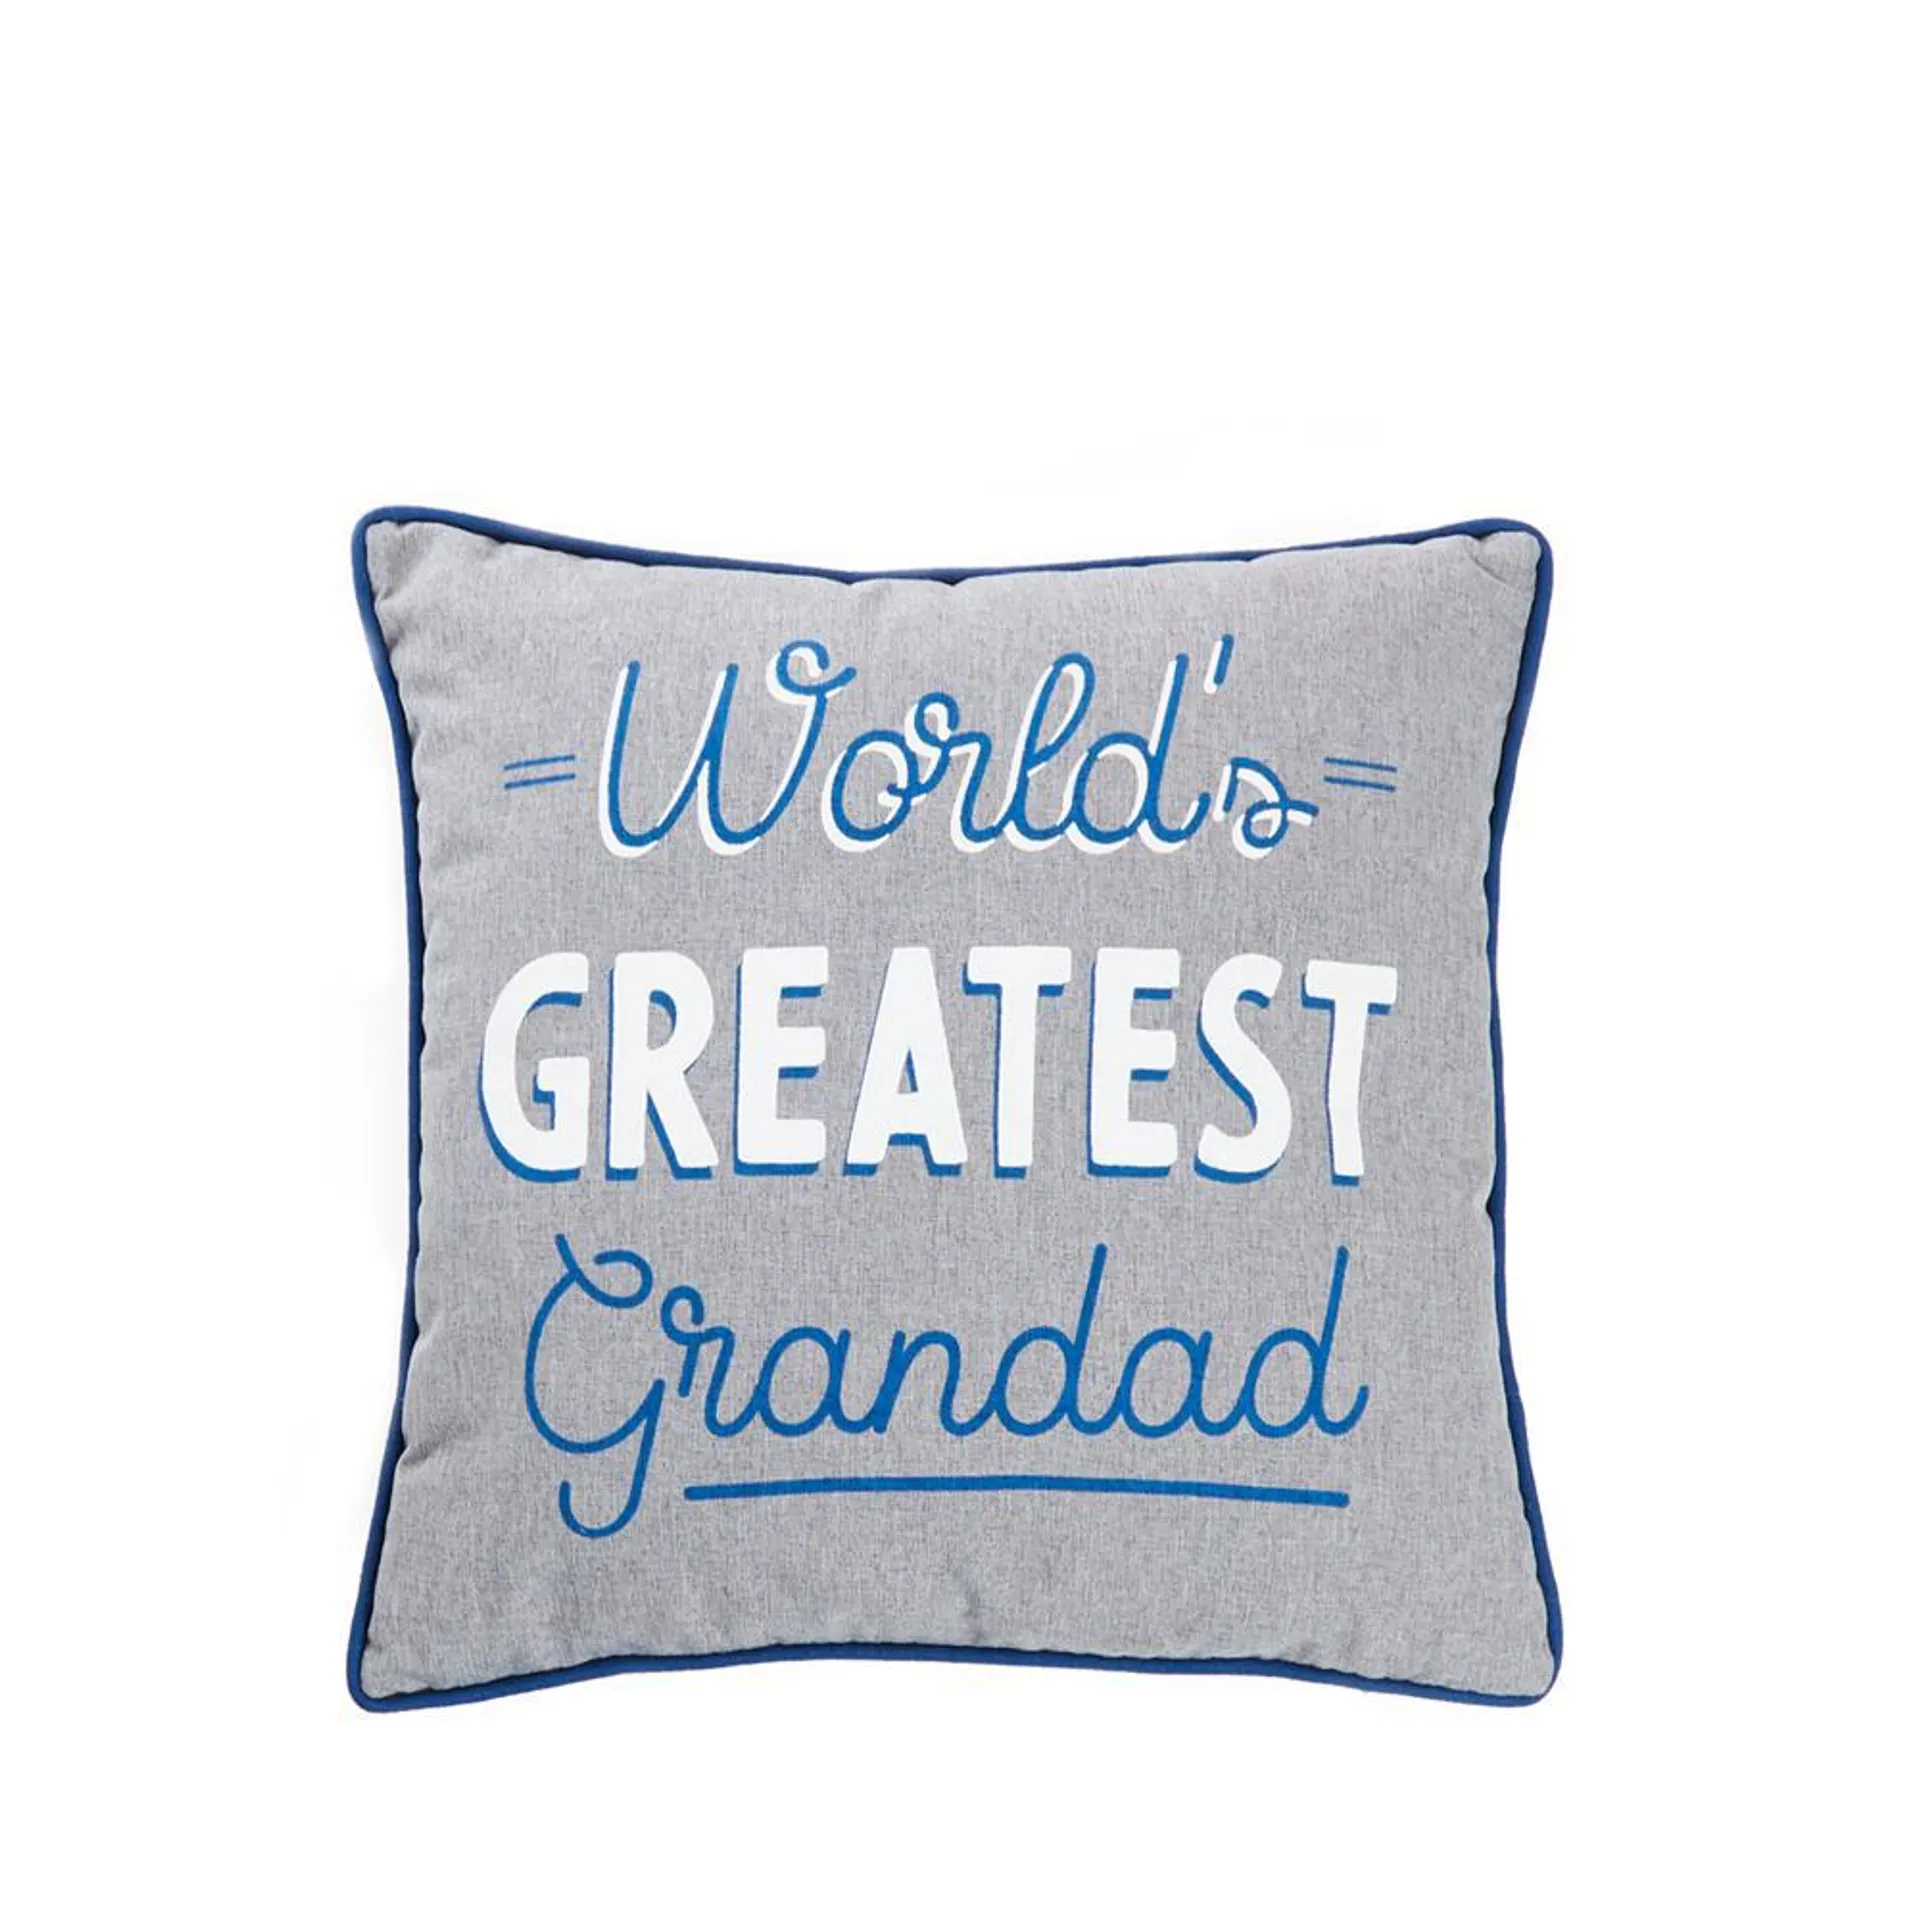 Dad In A Billion World's Greatest Grandad Cushion